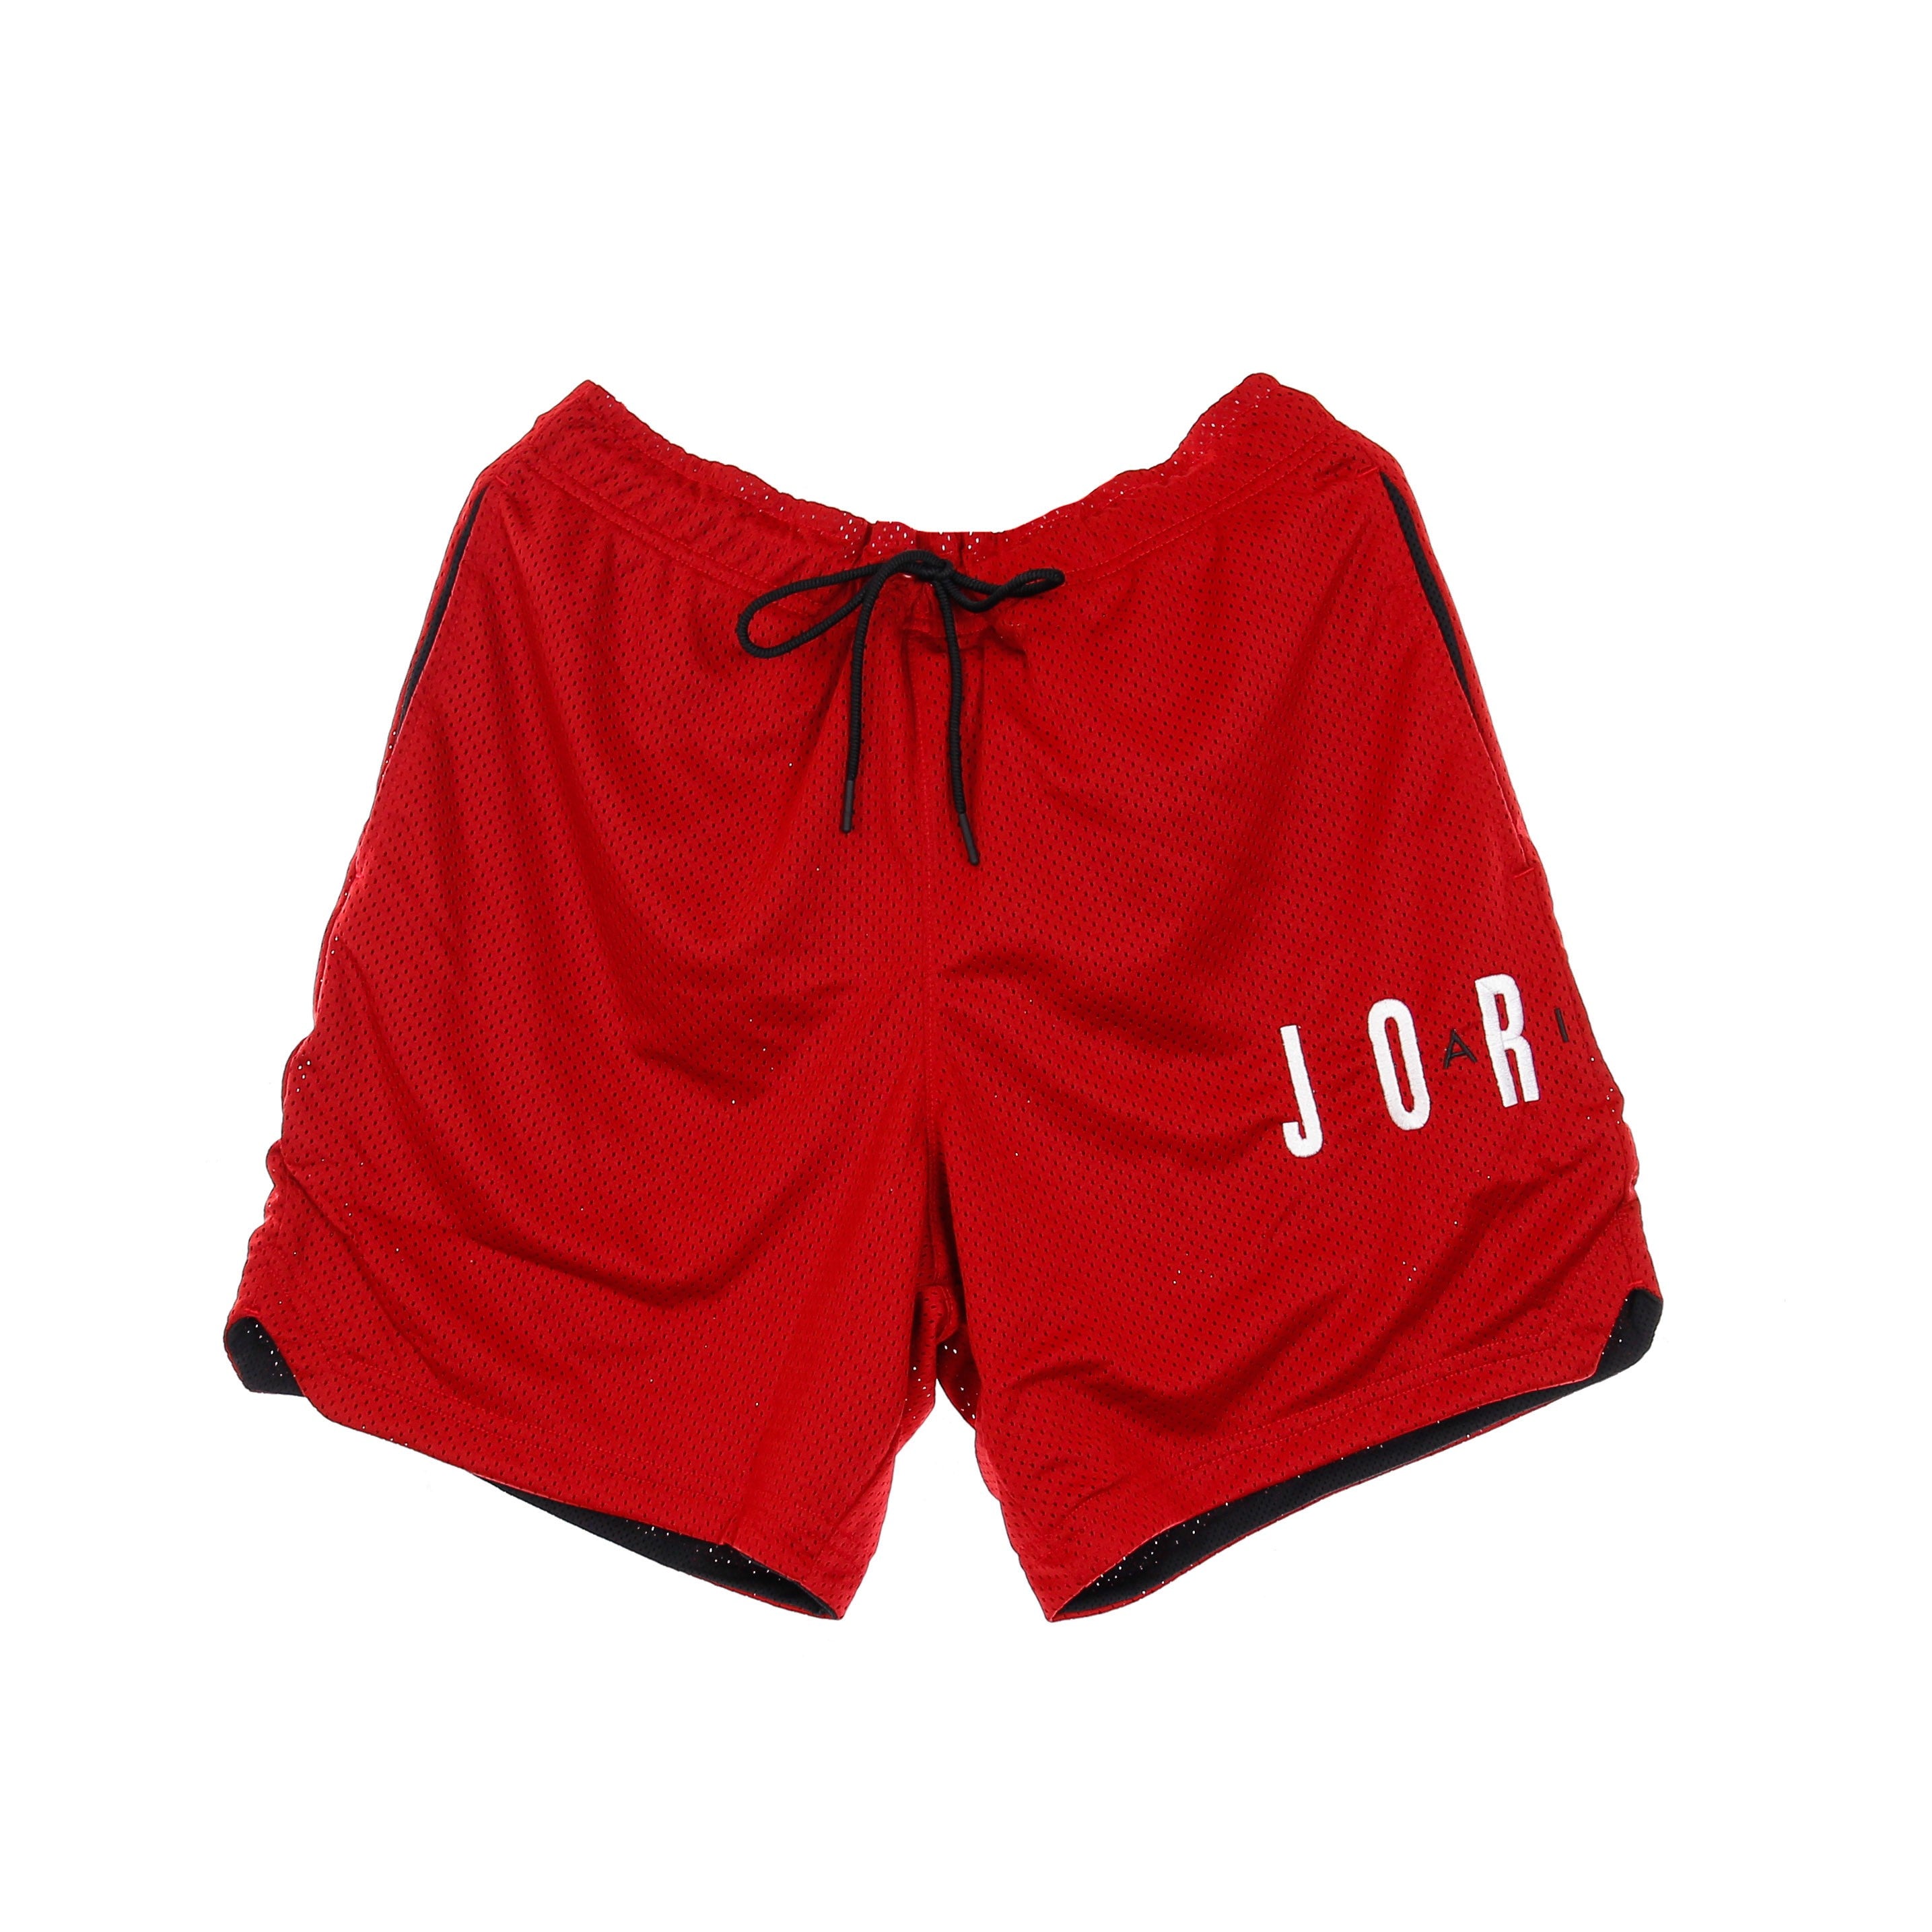 Jordan, Pantaloncino Tipo Basket Uomo Air Short, Gym Red/black/black